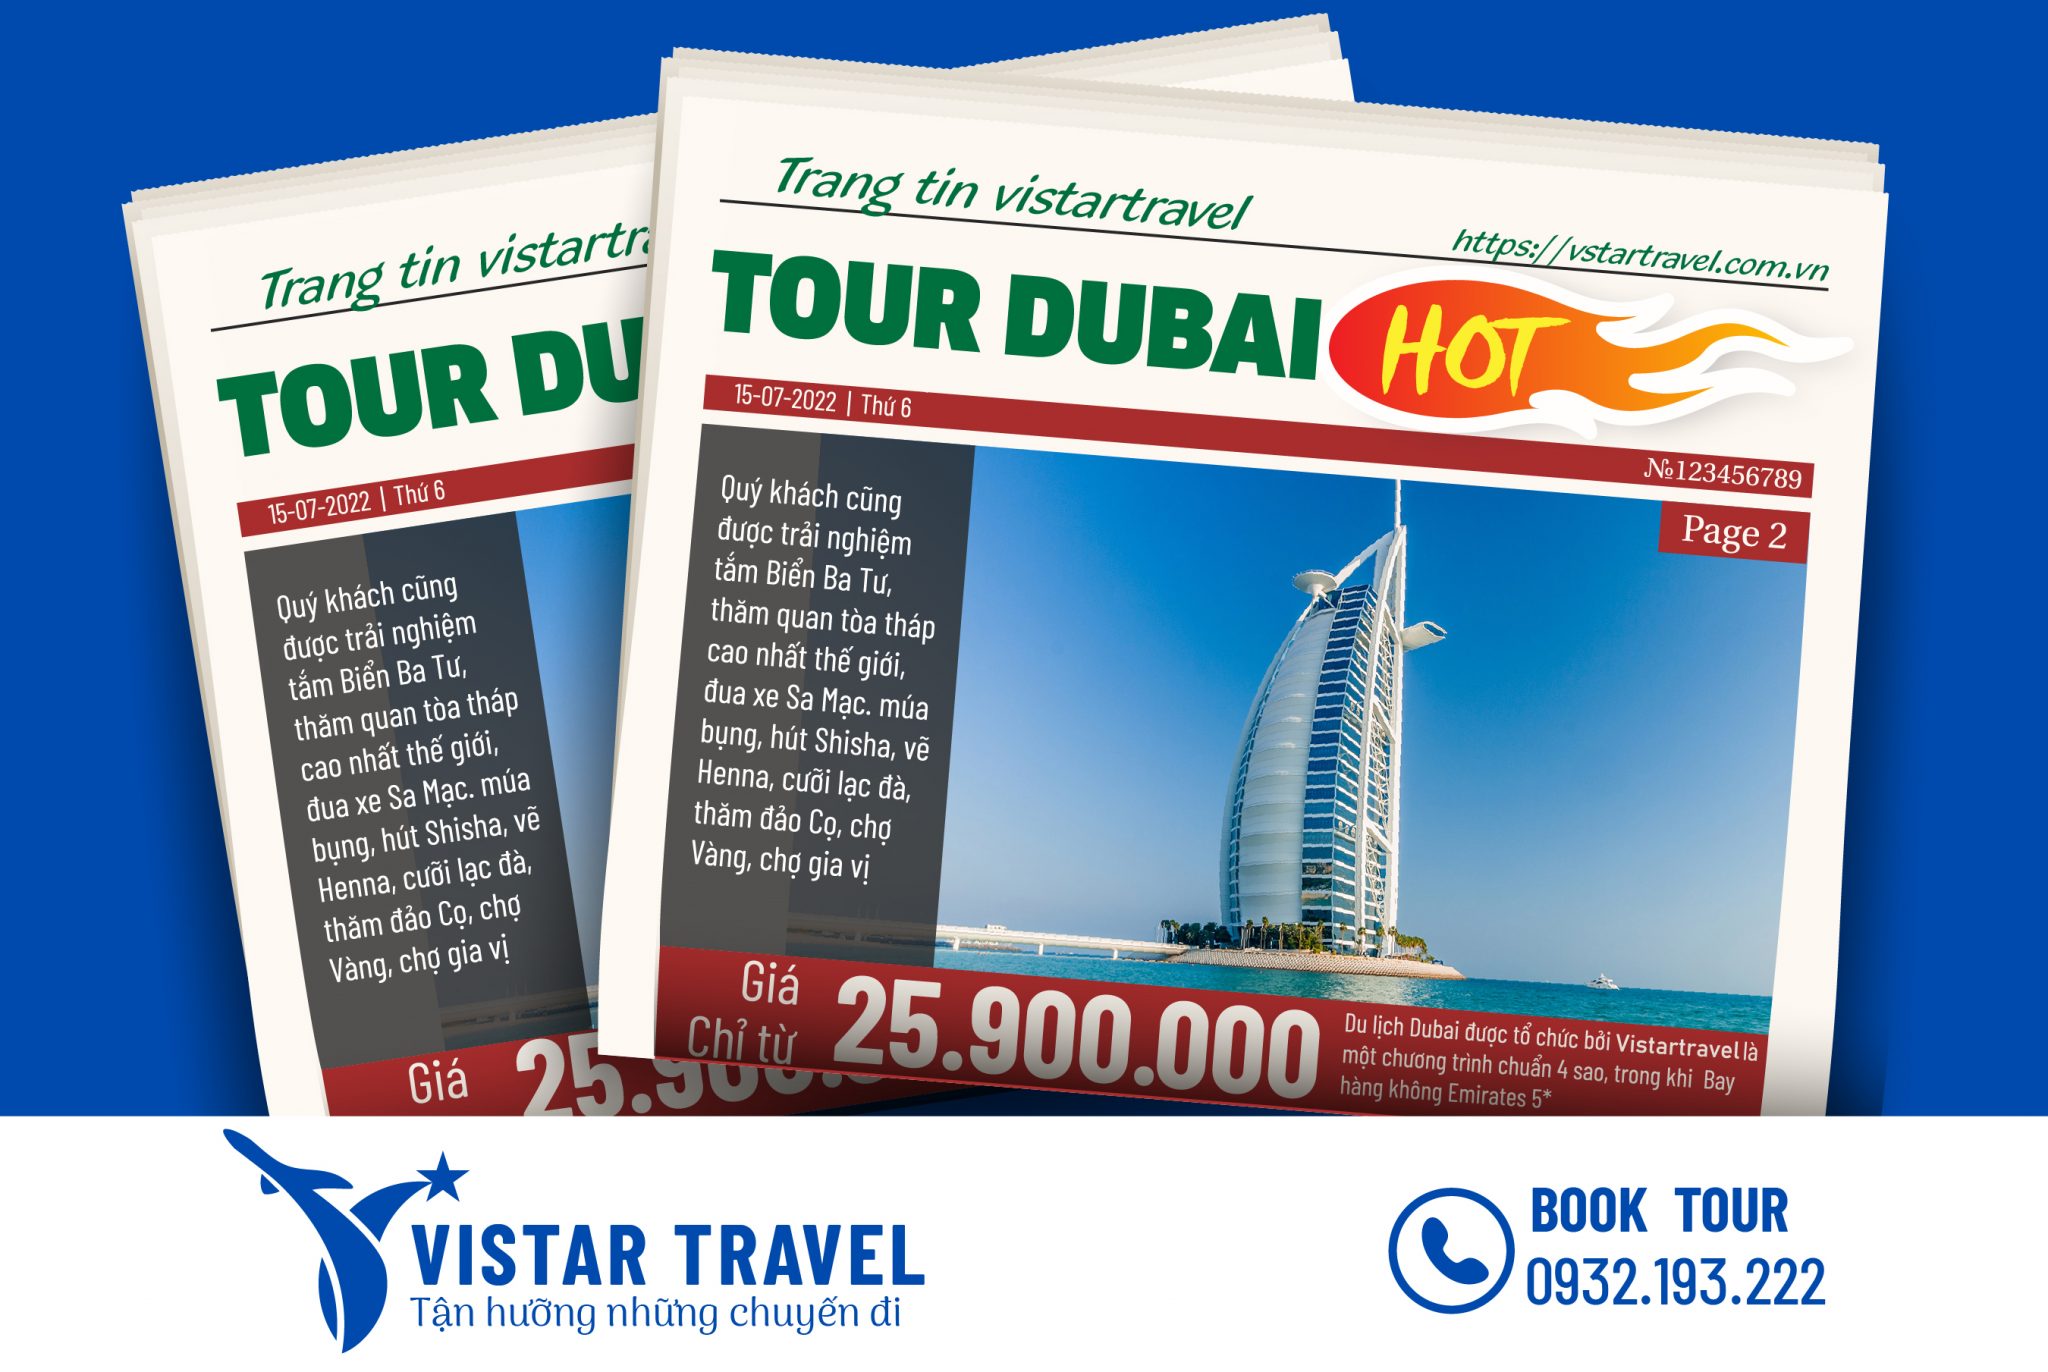 Tour Dubai - Abu Dhabi là một chuyến phiêu lưu tuyệt vời, nơi bạn có thể khám phá các điểm đến ấn tượng như tháp Burj Khalifa, đảo Palm Jumeirah hay hoá mình vào không gian cổ đại ở Abu Dhabi. Đây là một trải nghiệm không thể bỏ qua đối với những ai yêu thích du lịch.